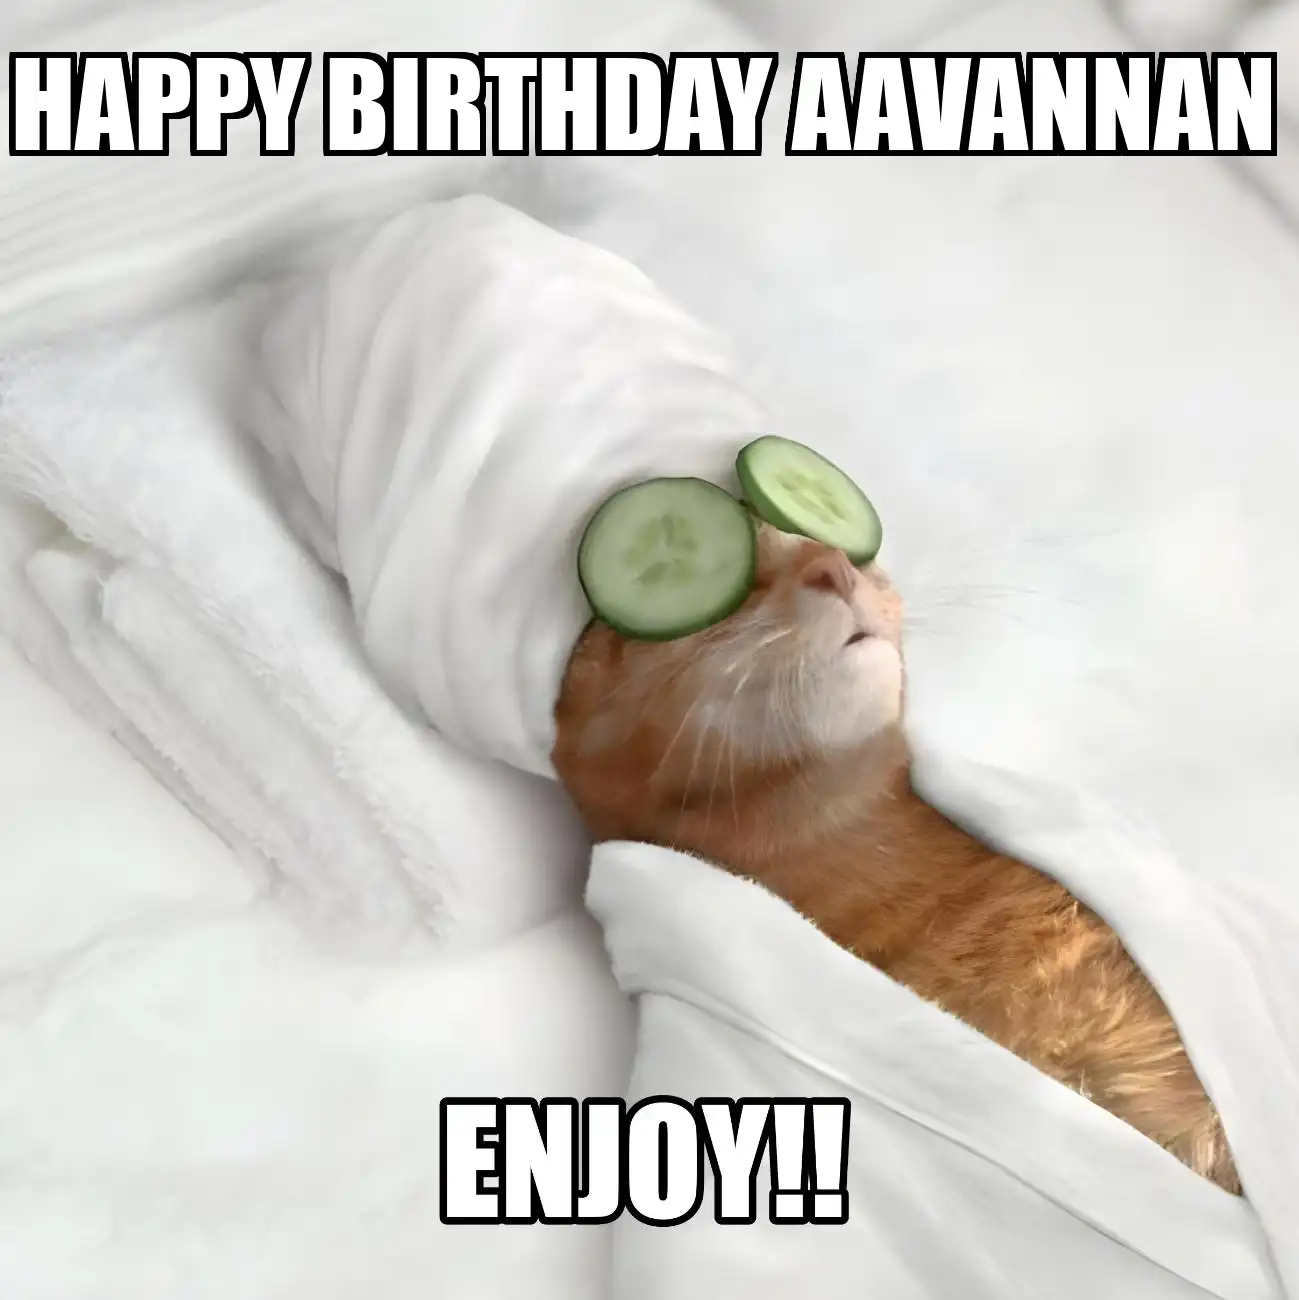 Happy Birthday Aavannan Enjoy Cat Meme